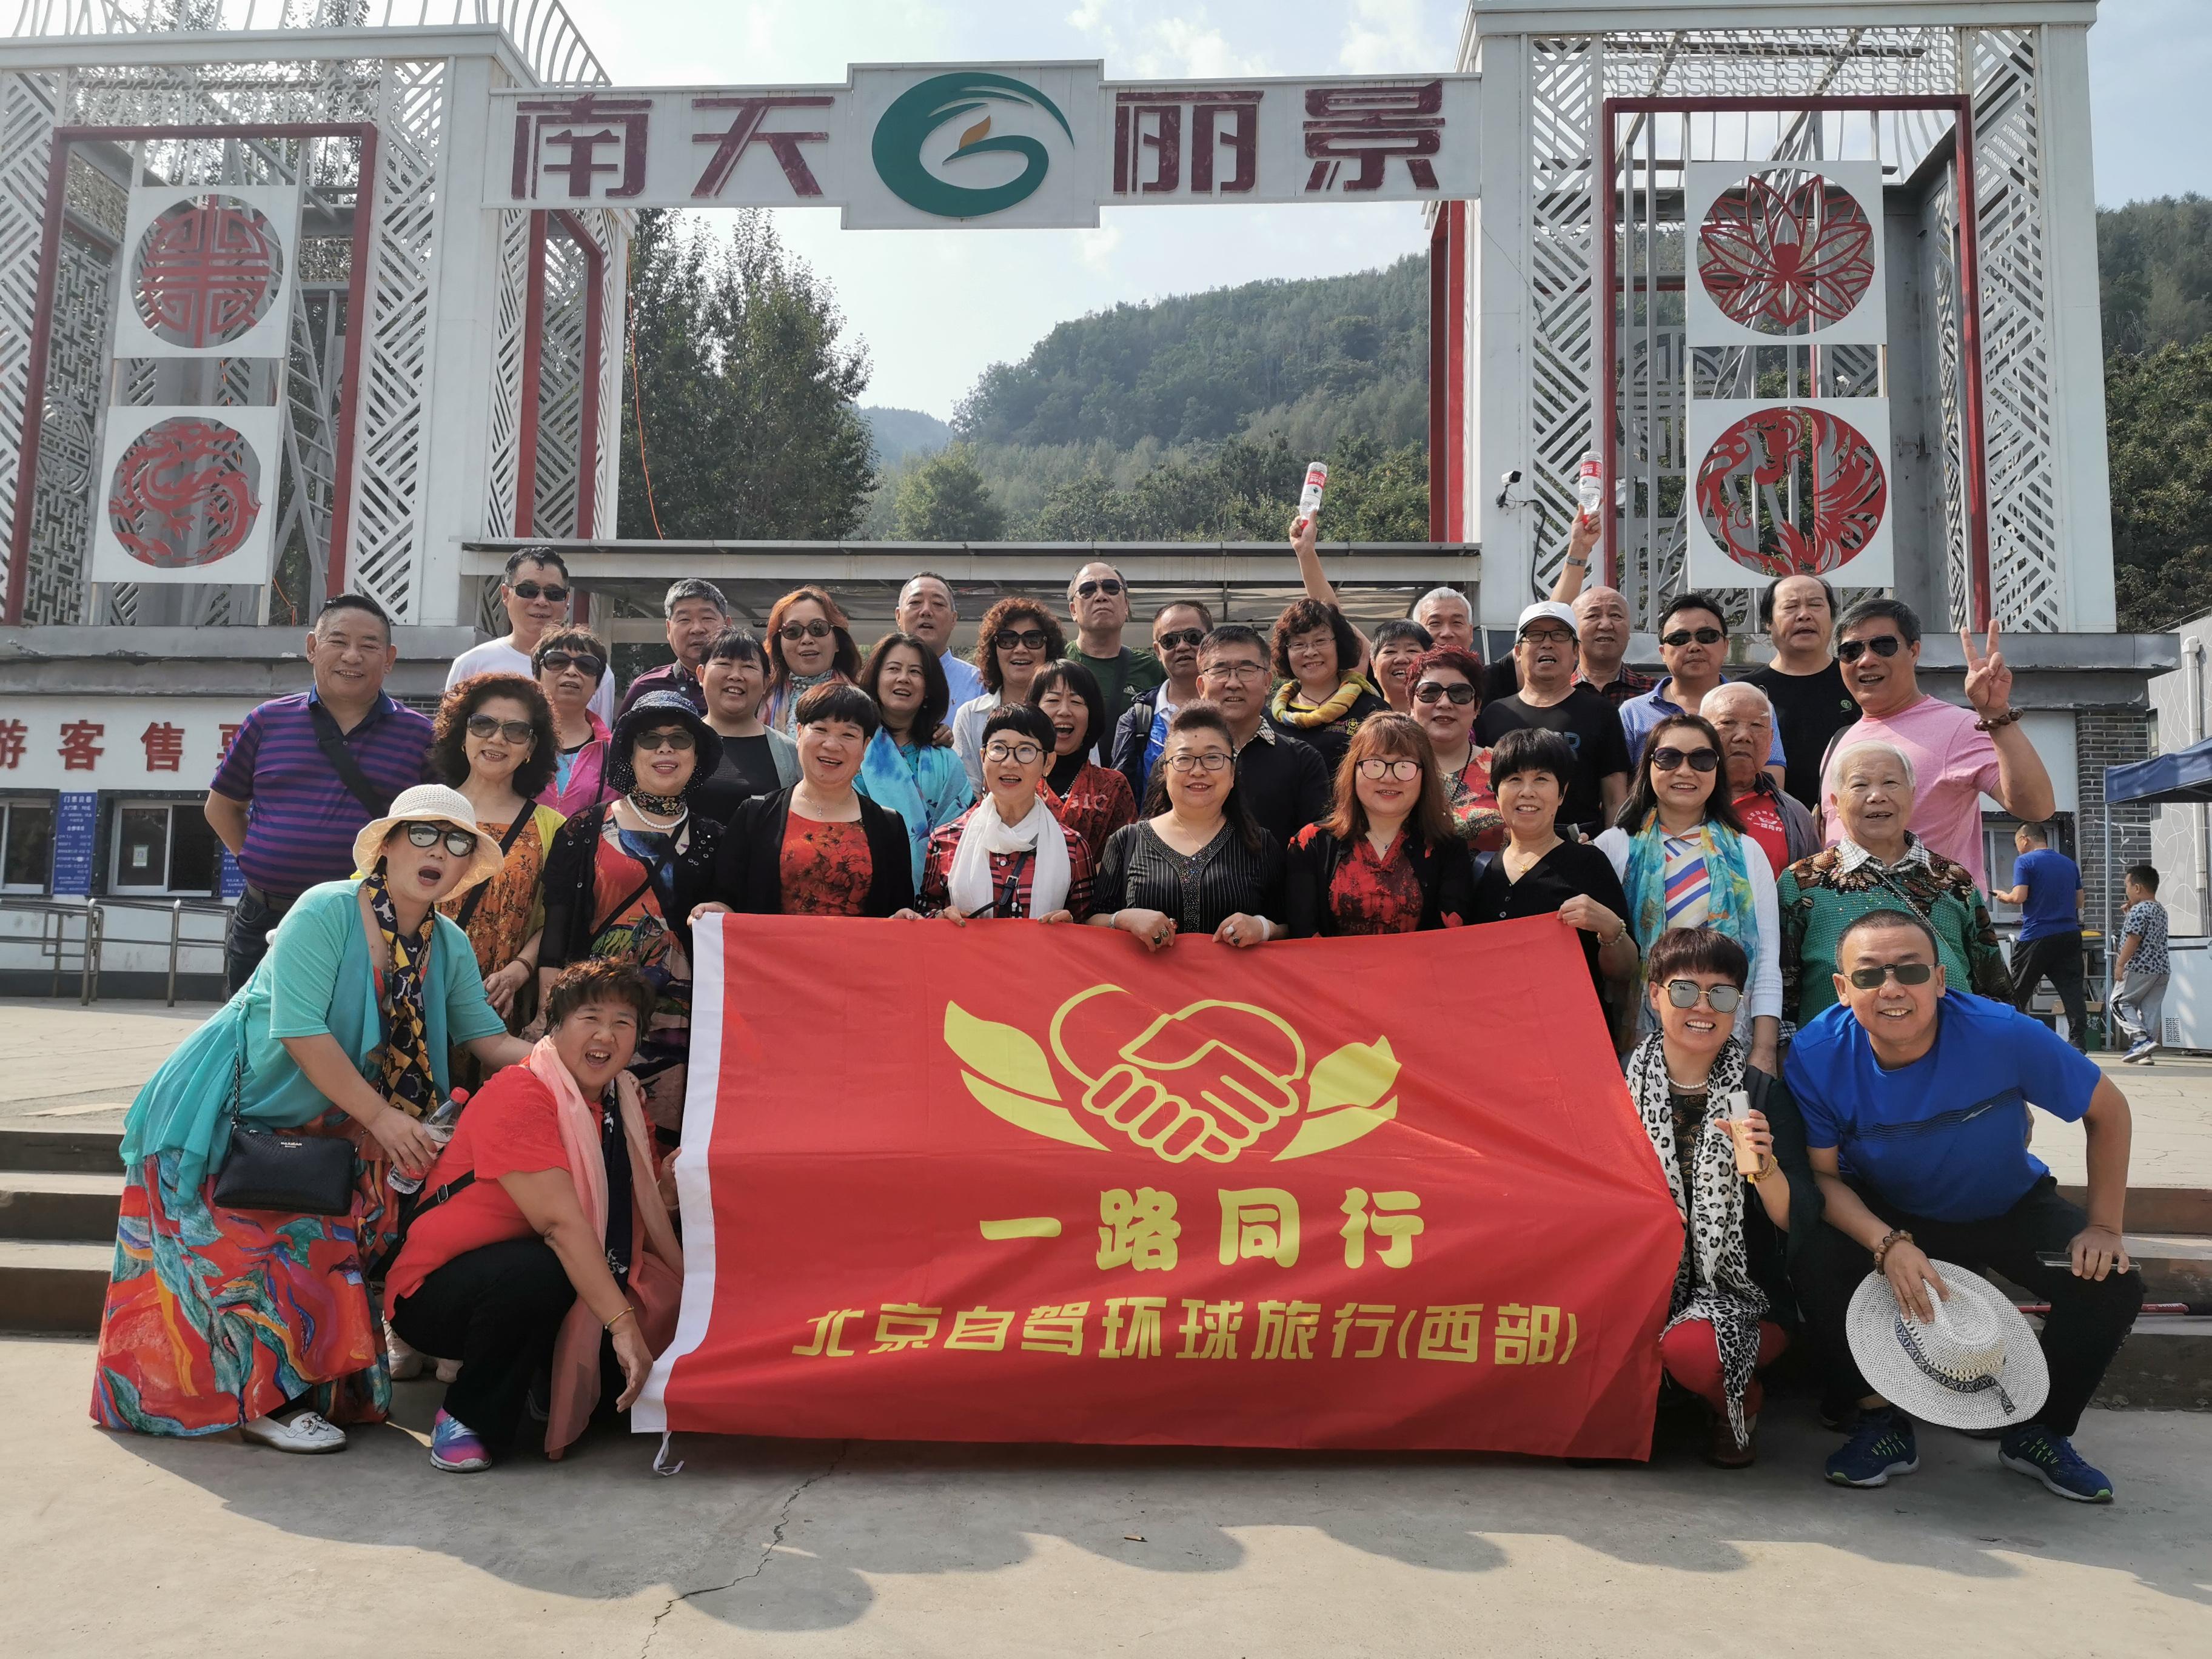 北京快乐一路同行自驾旅游俱乐部开启京外兴隆两日游 复制标题 复制内容